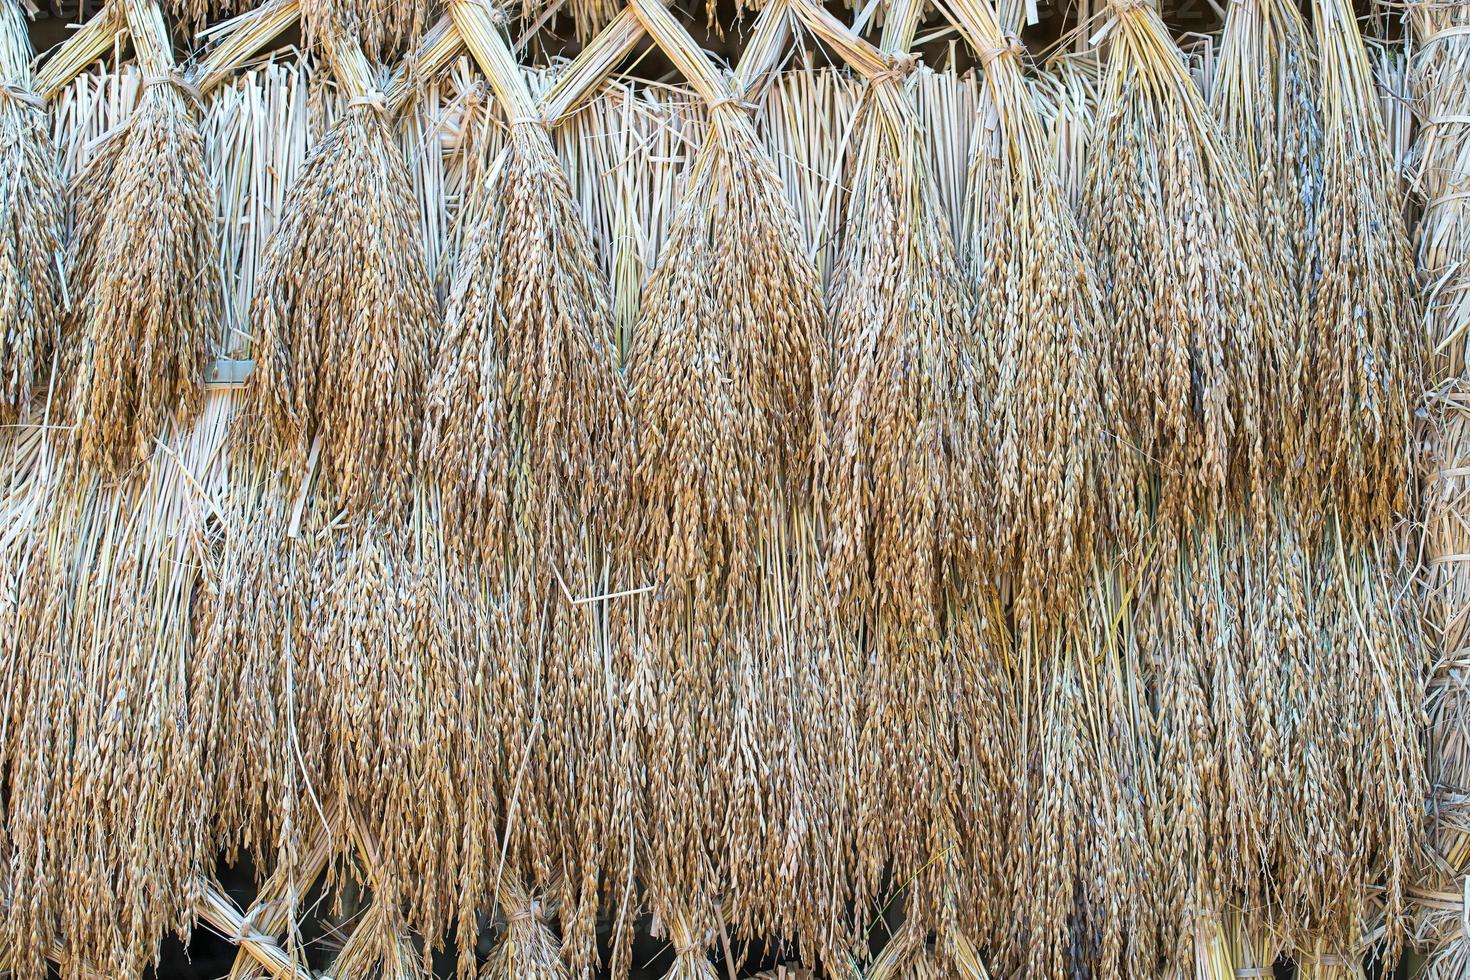 semillas secas de arroz paddy foto